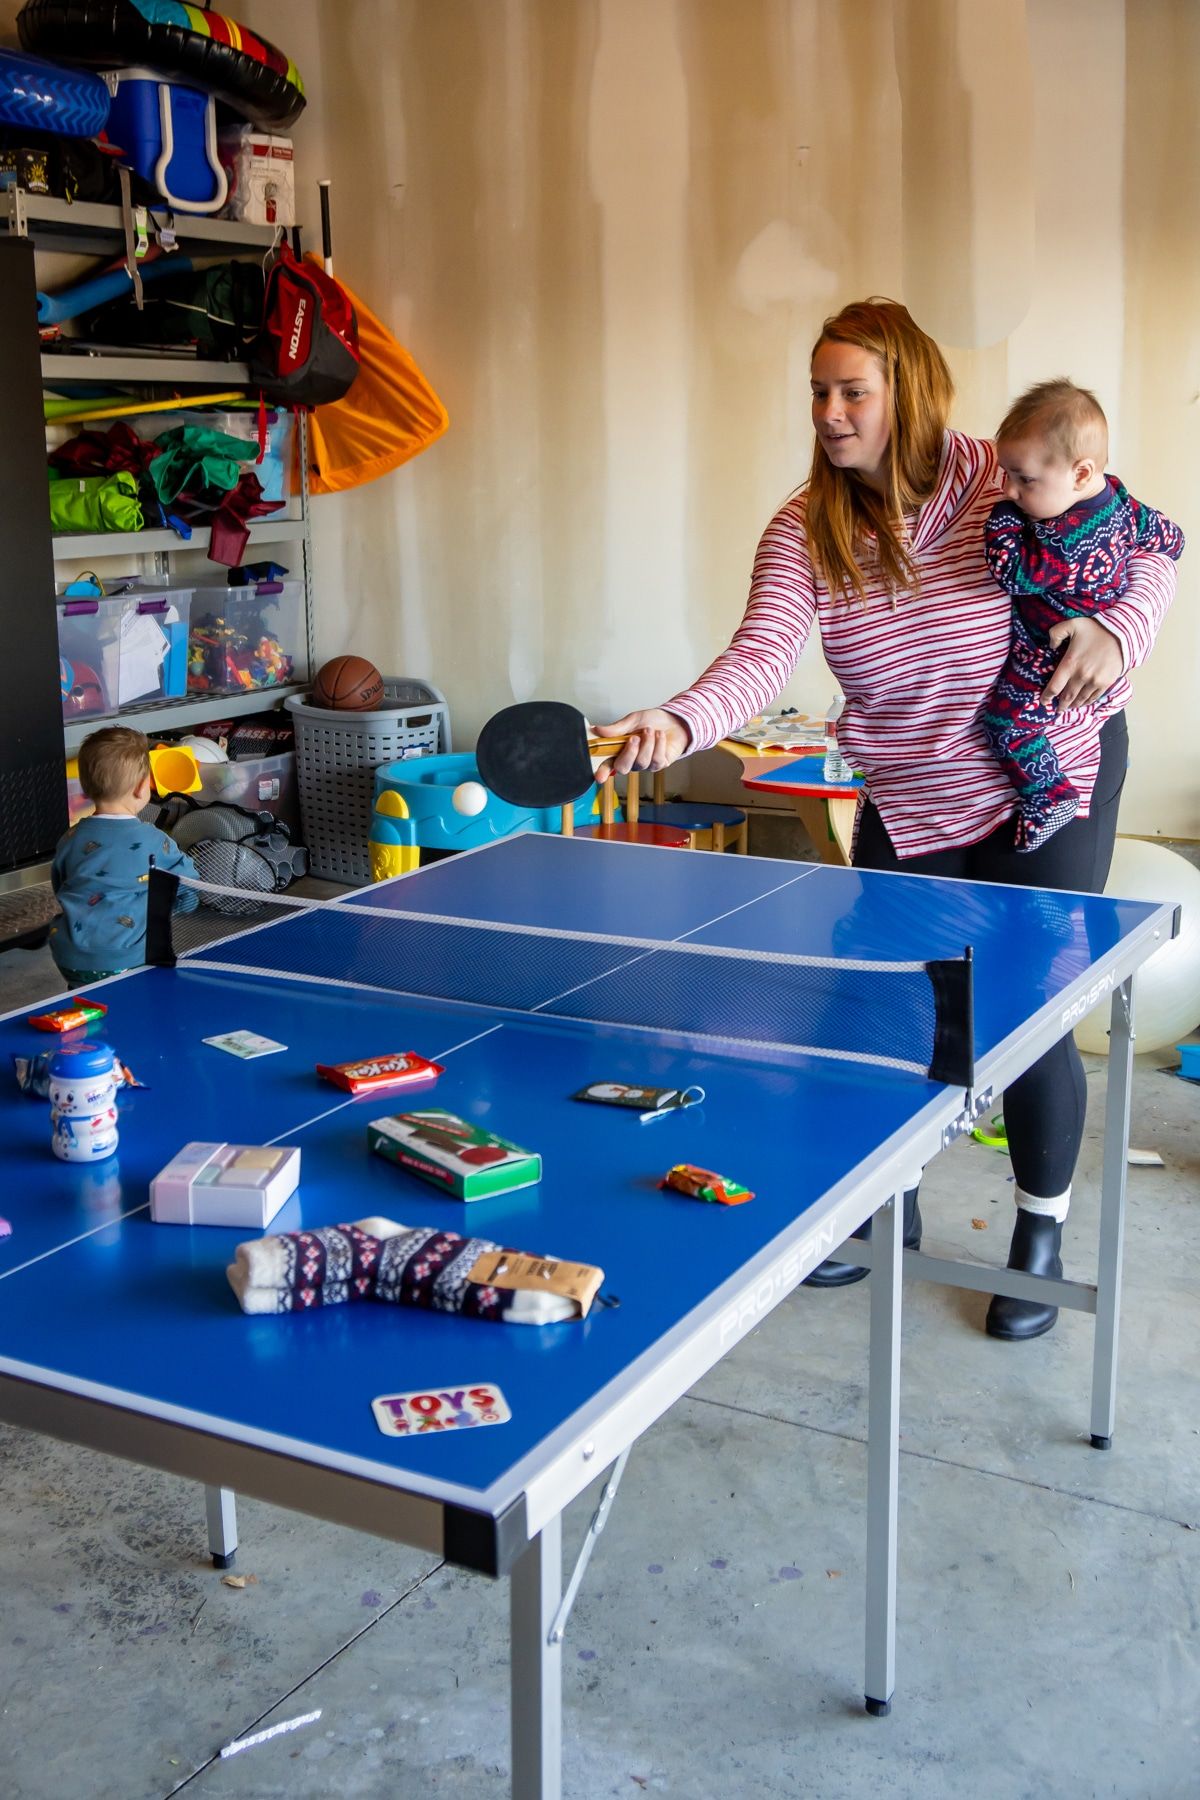 Dona colpejant un ping pong sobre una taula amb premis